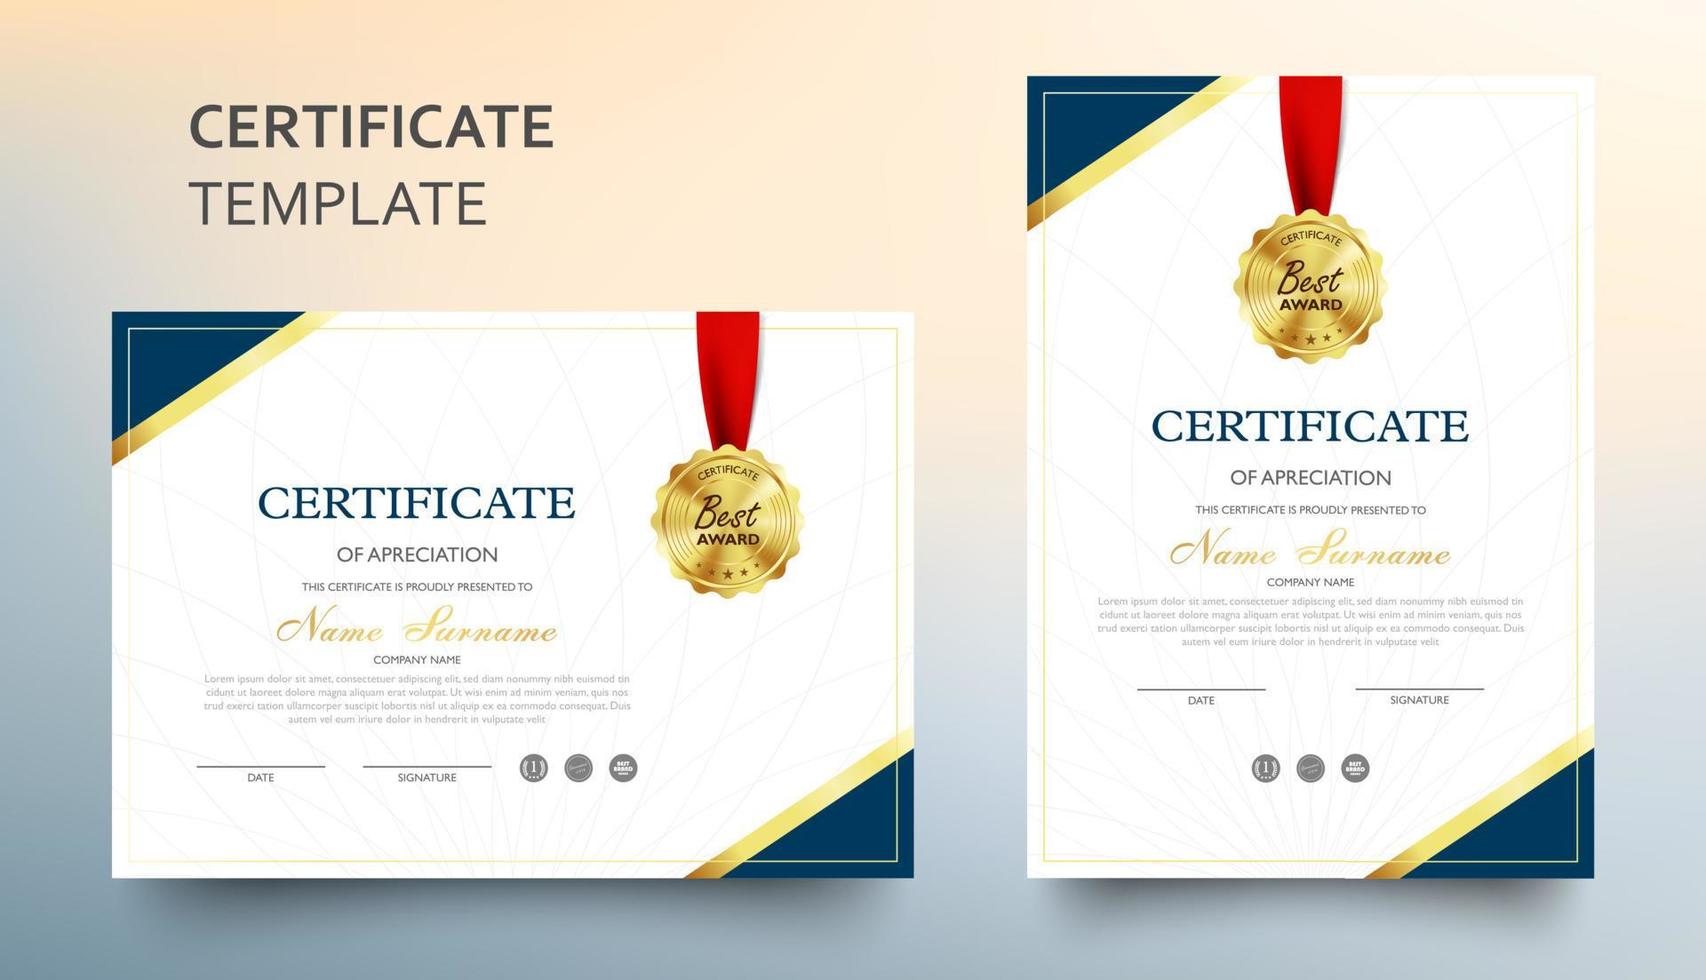 certificat d'appréciation modèle avec luxe et modèle moderne, diplôme, illustration vectorielle vecteur